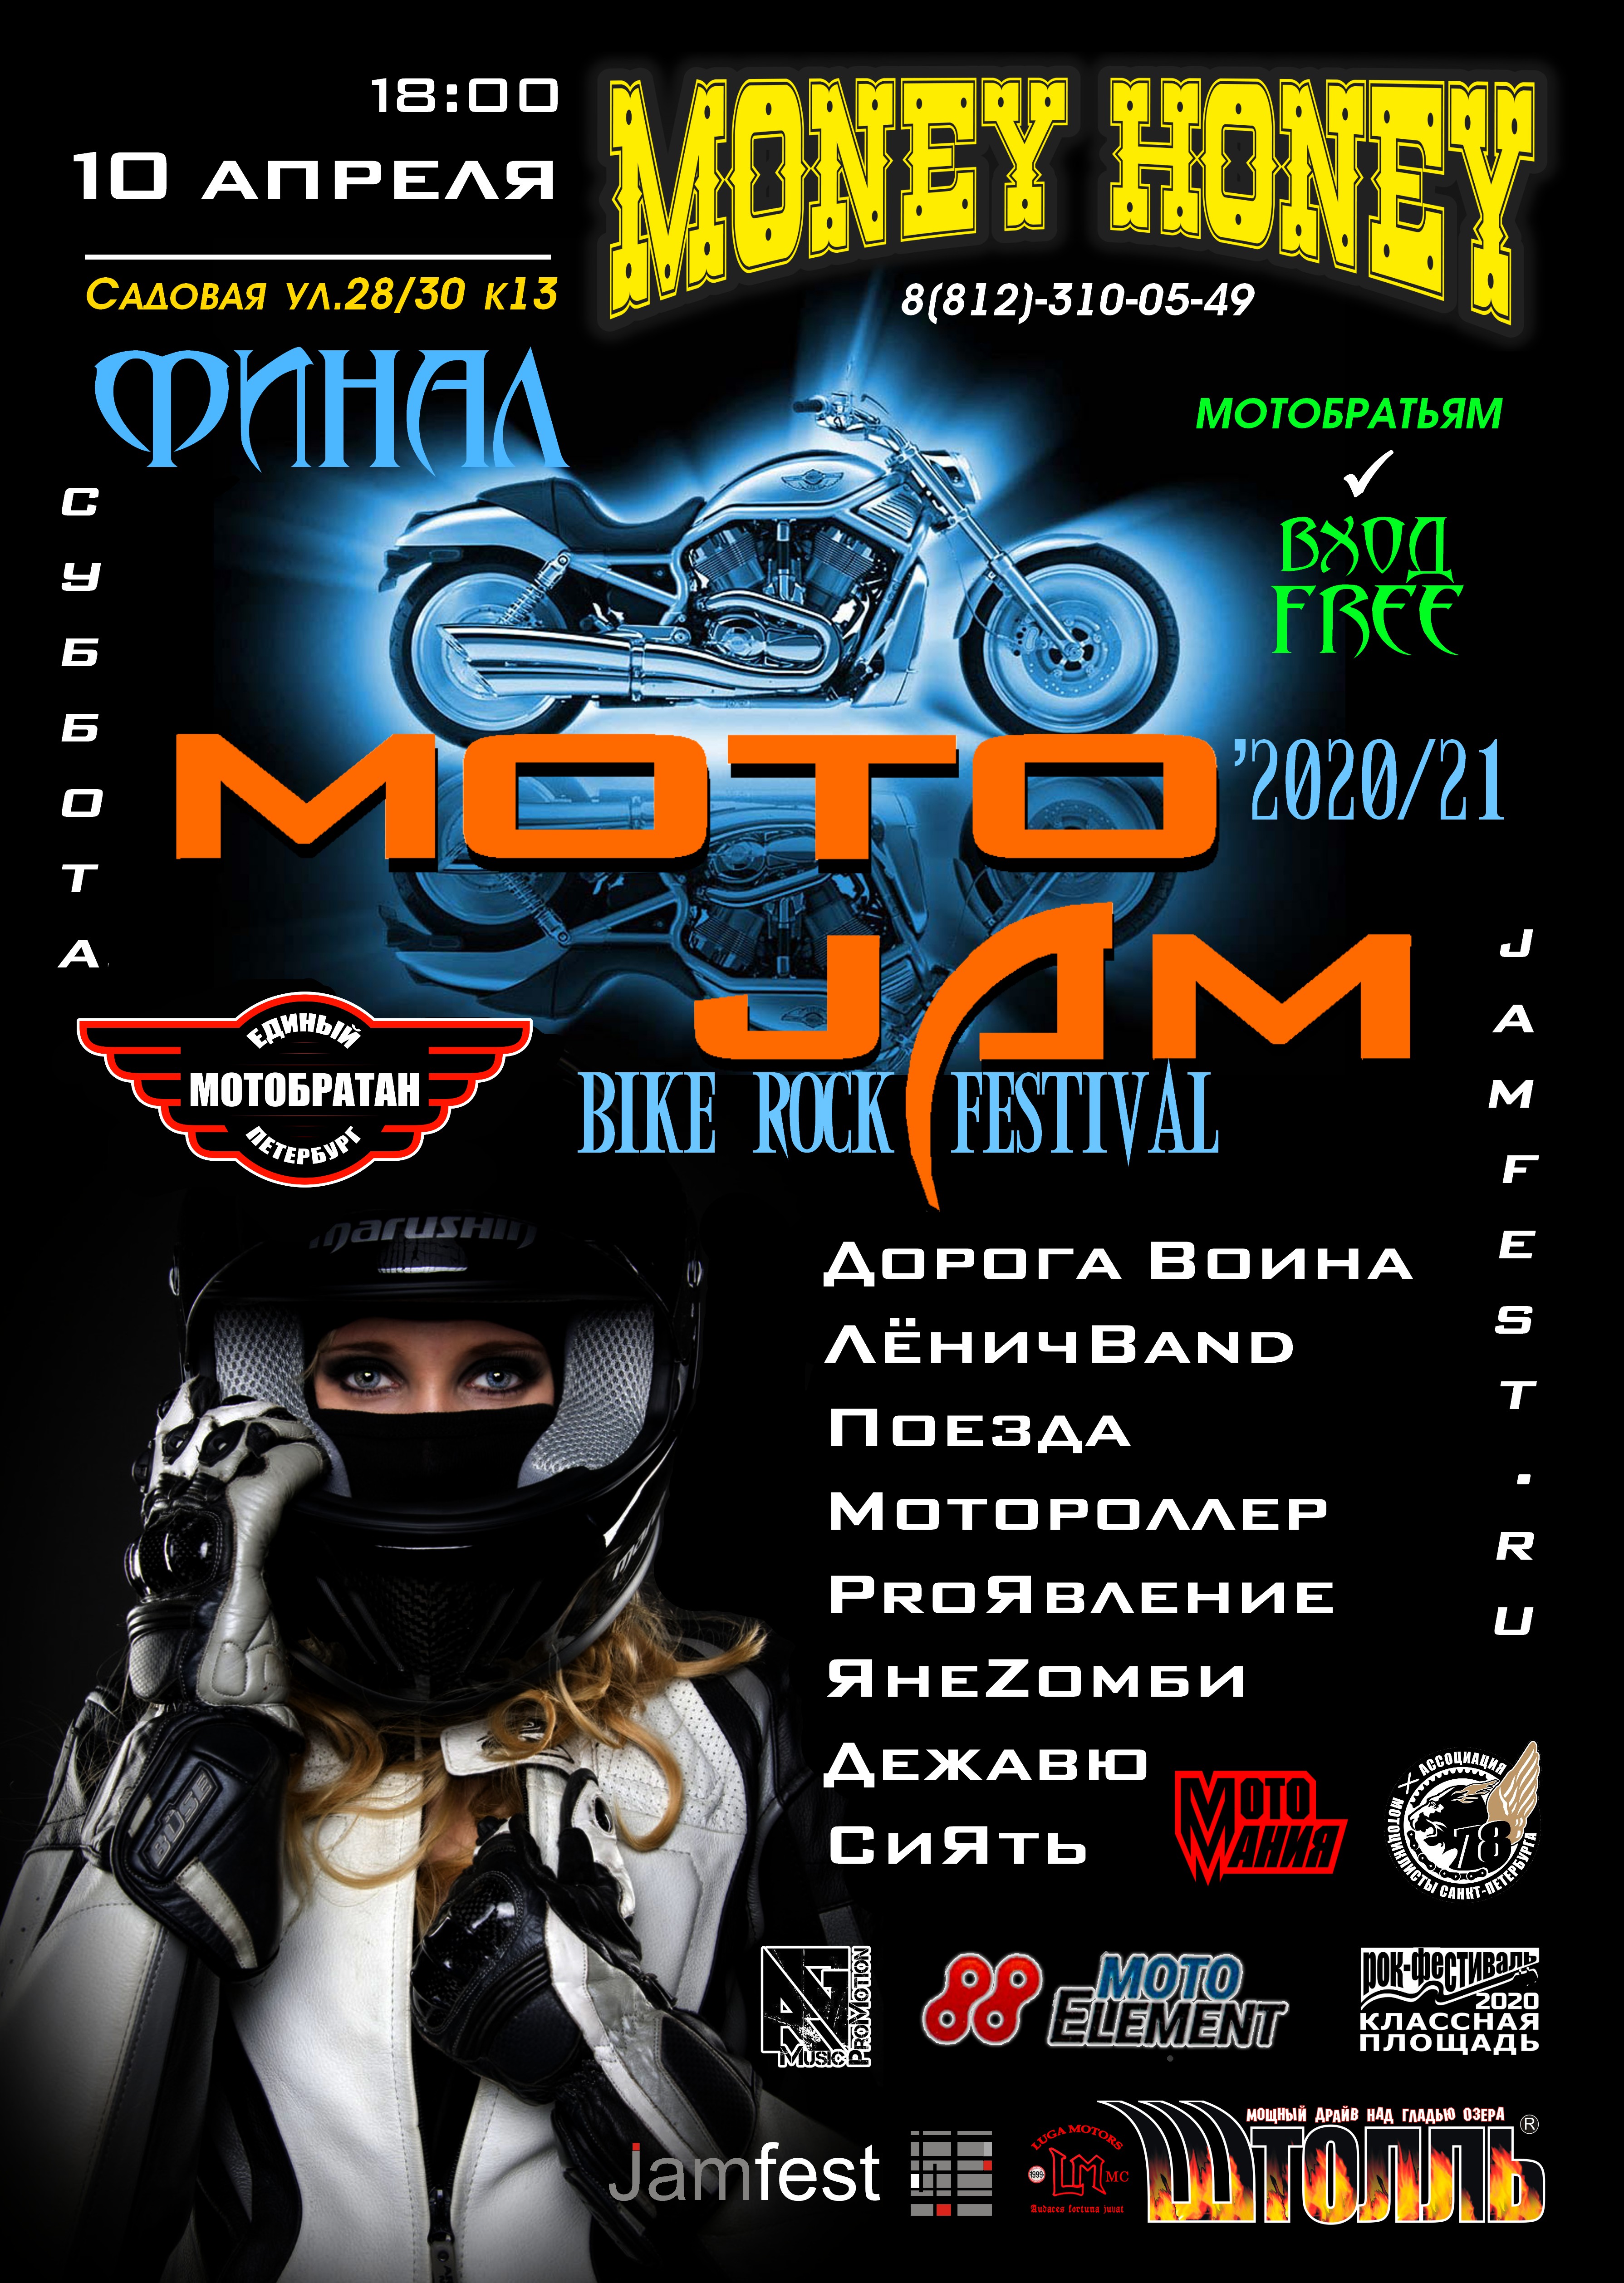 MotoJAM -2020/21 10 апреля 2021, концерт в Money Honey, Санкт-Петербург